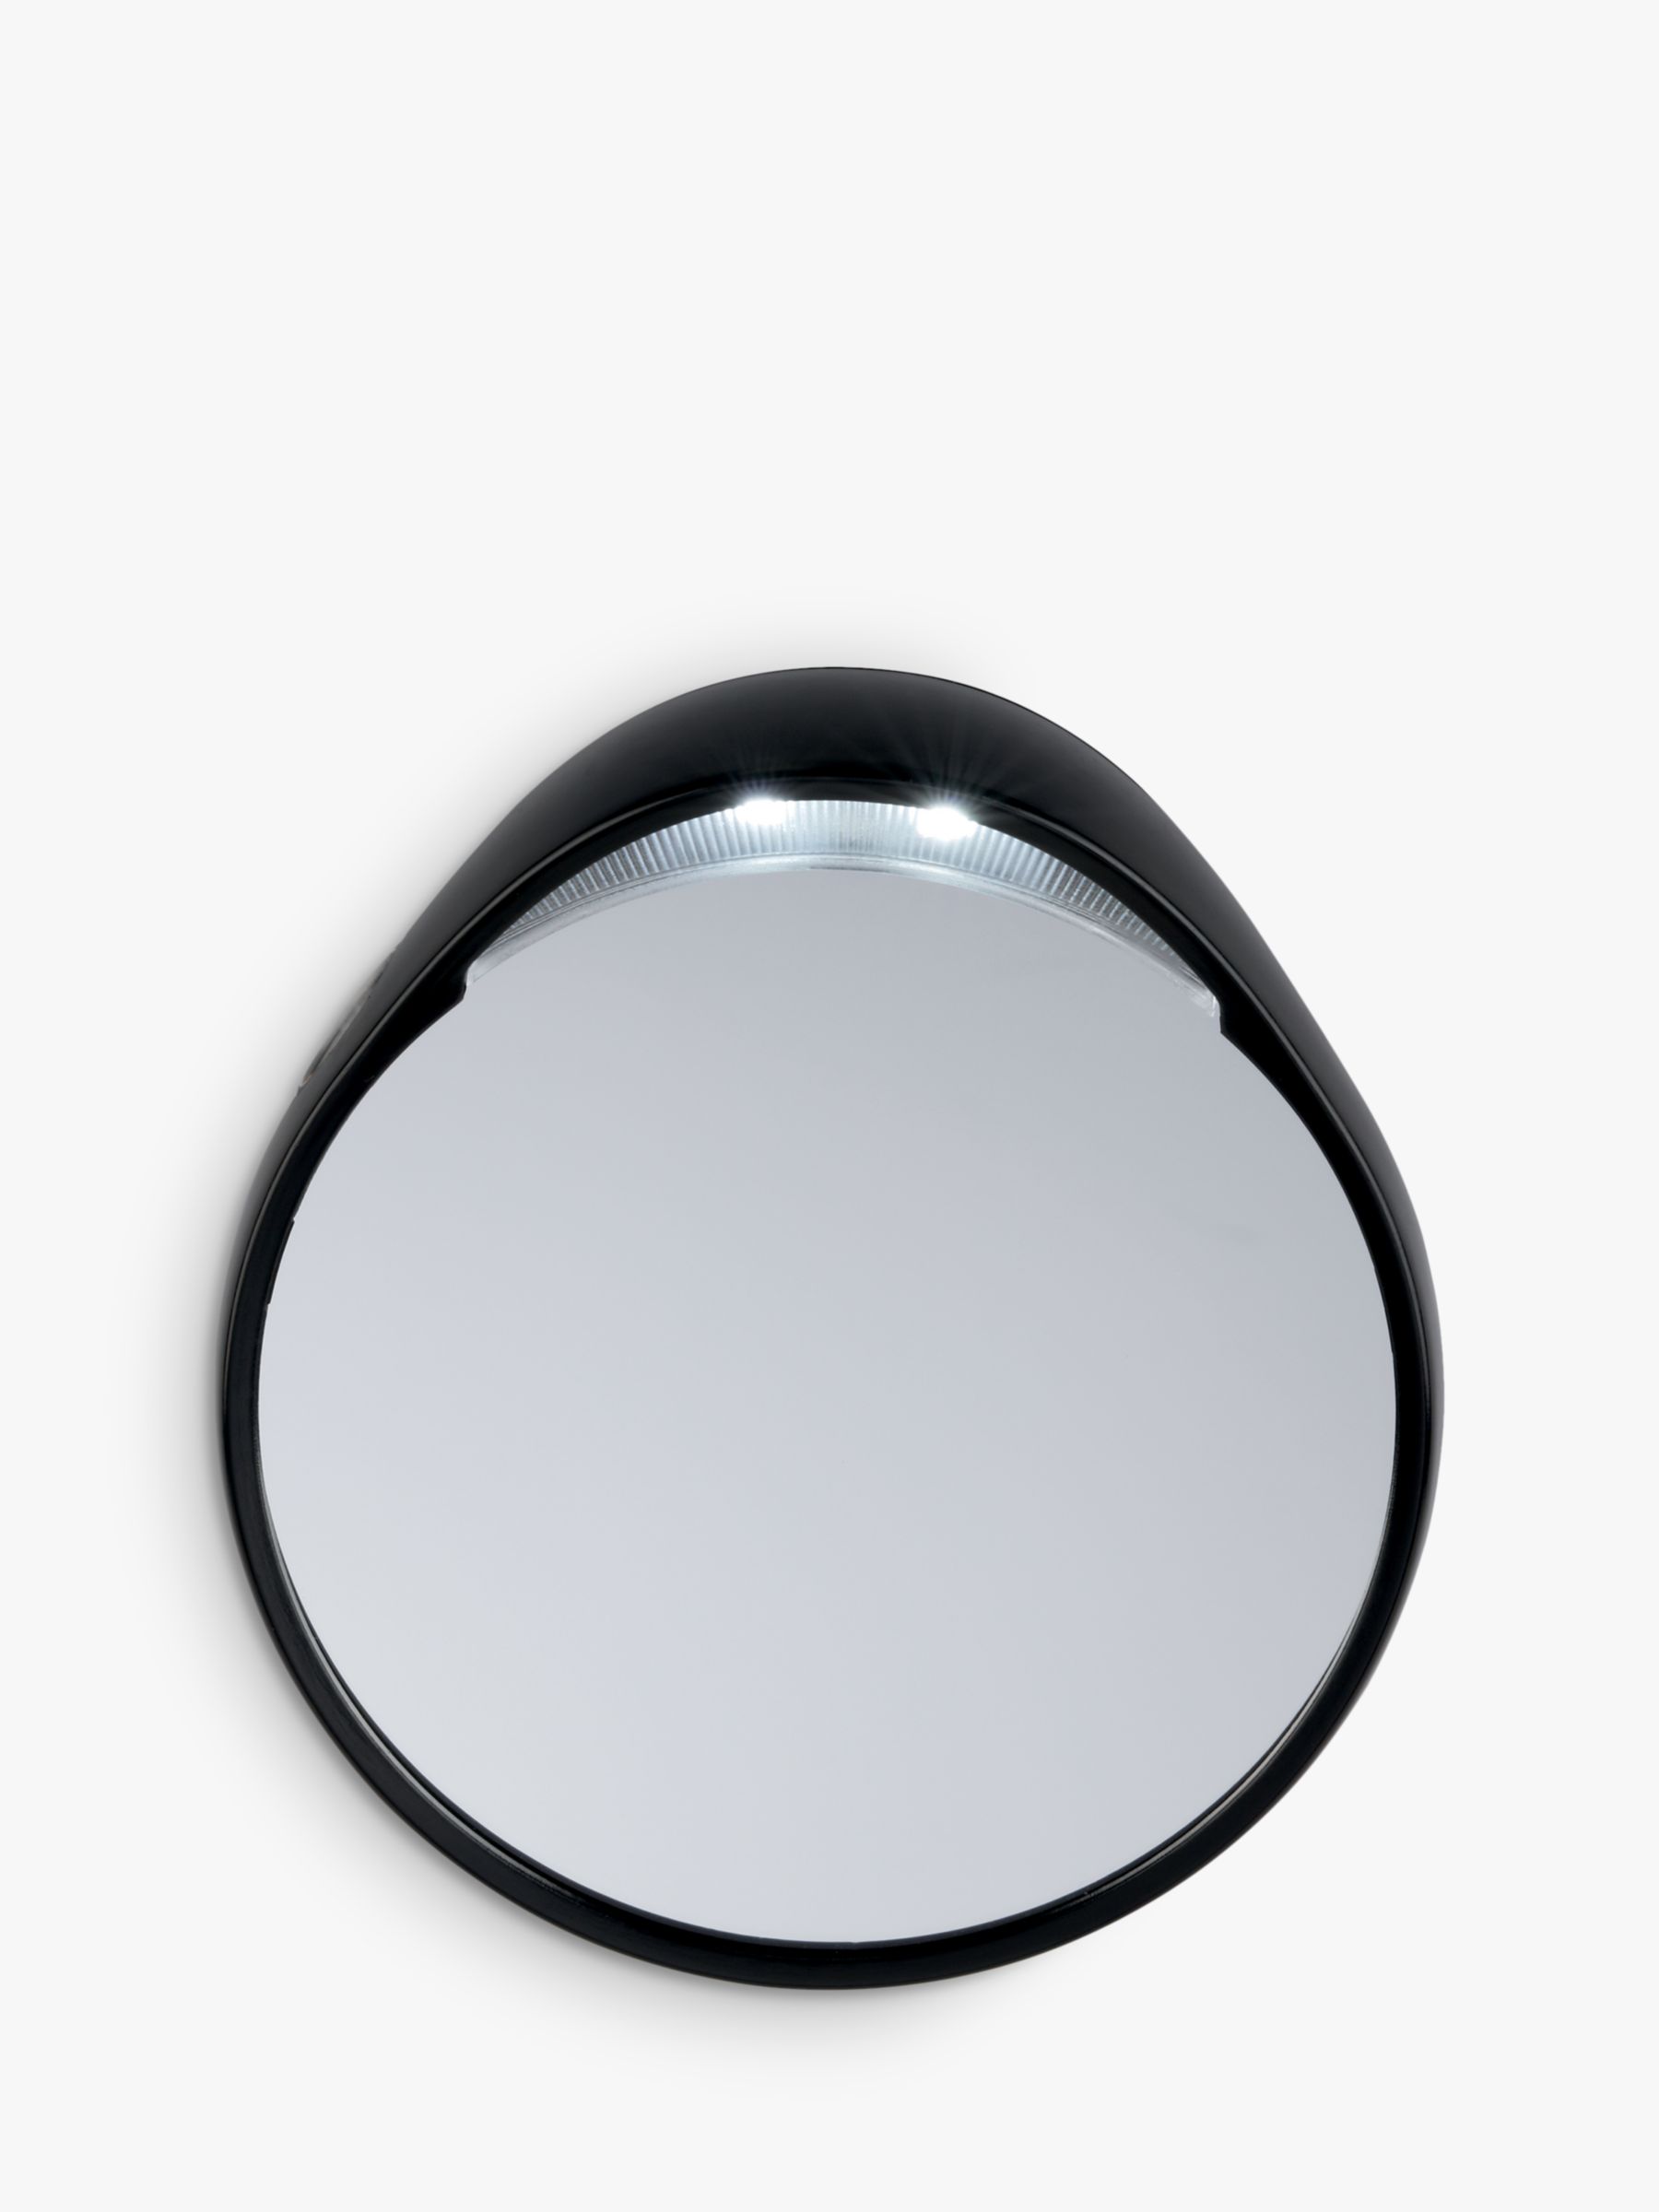 Tweezermate 10x Lighted Mirror, Silver